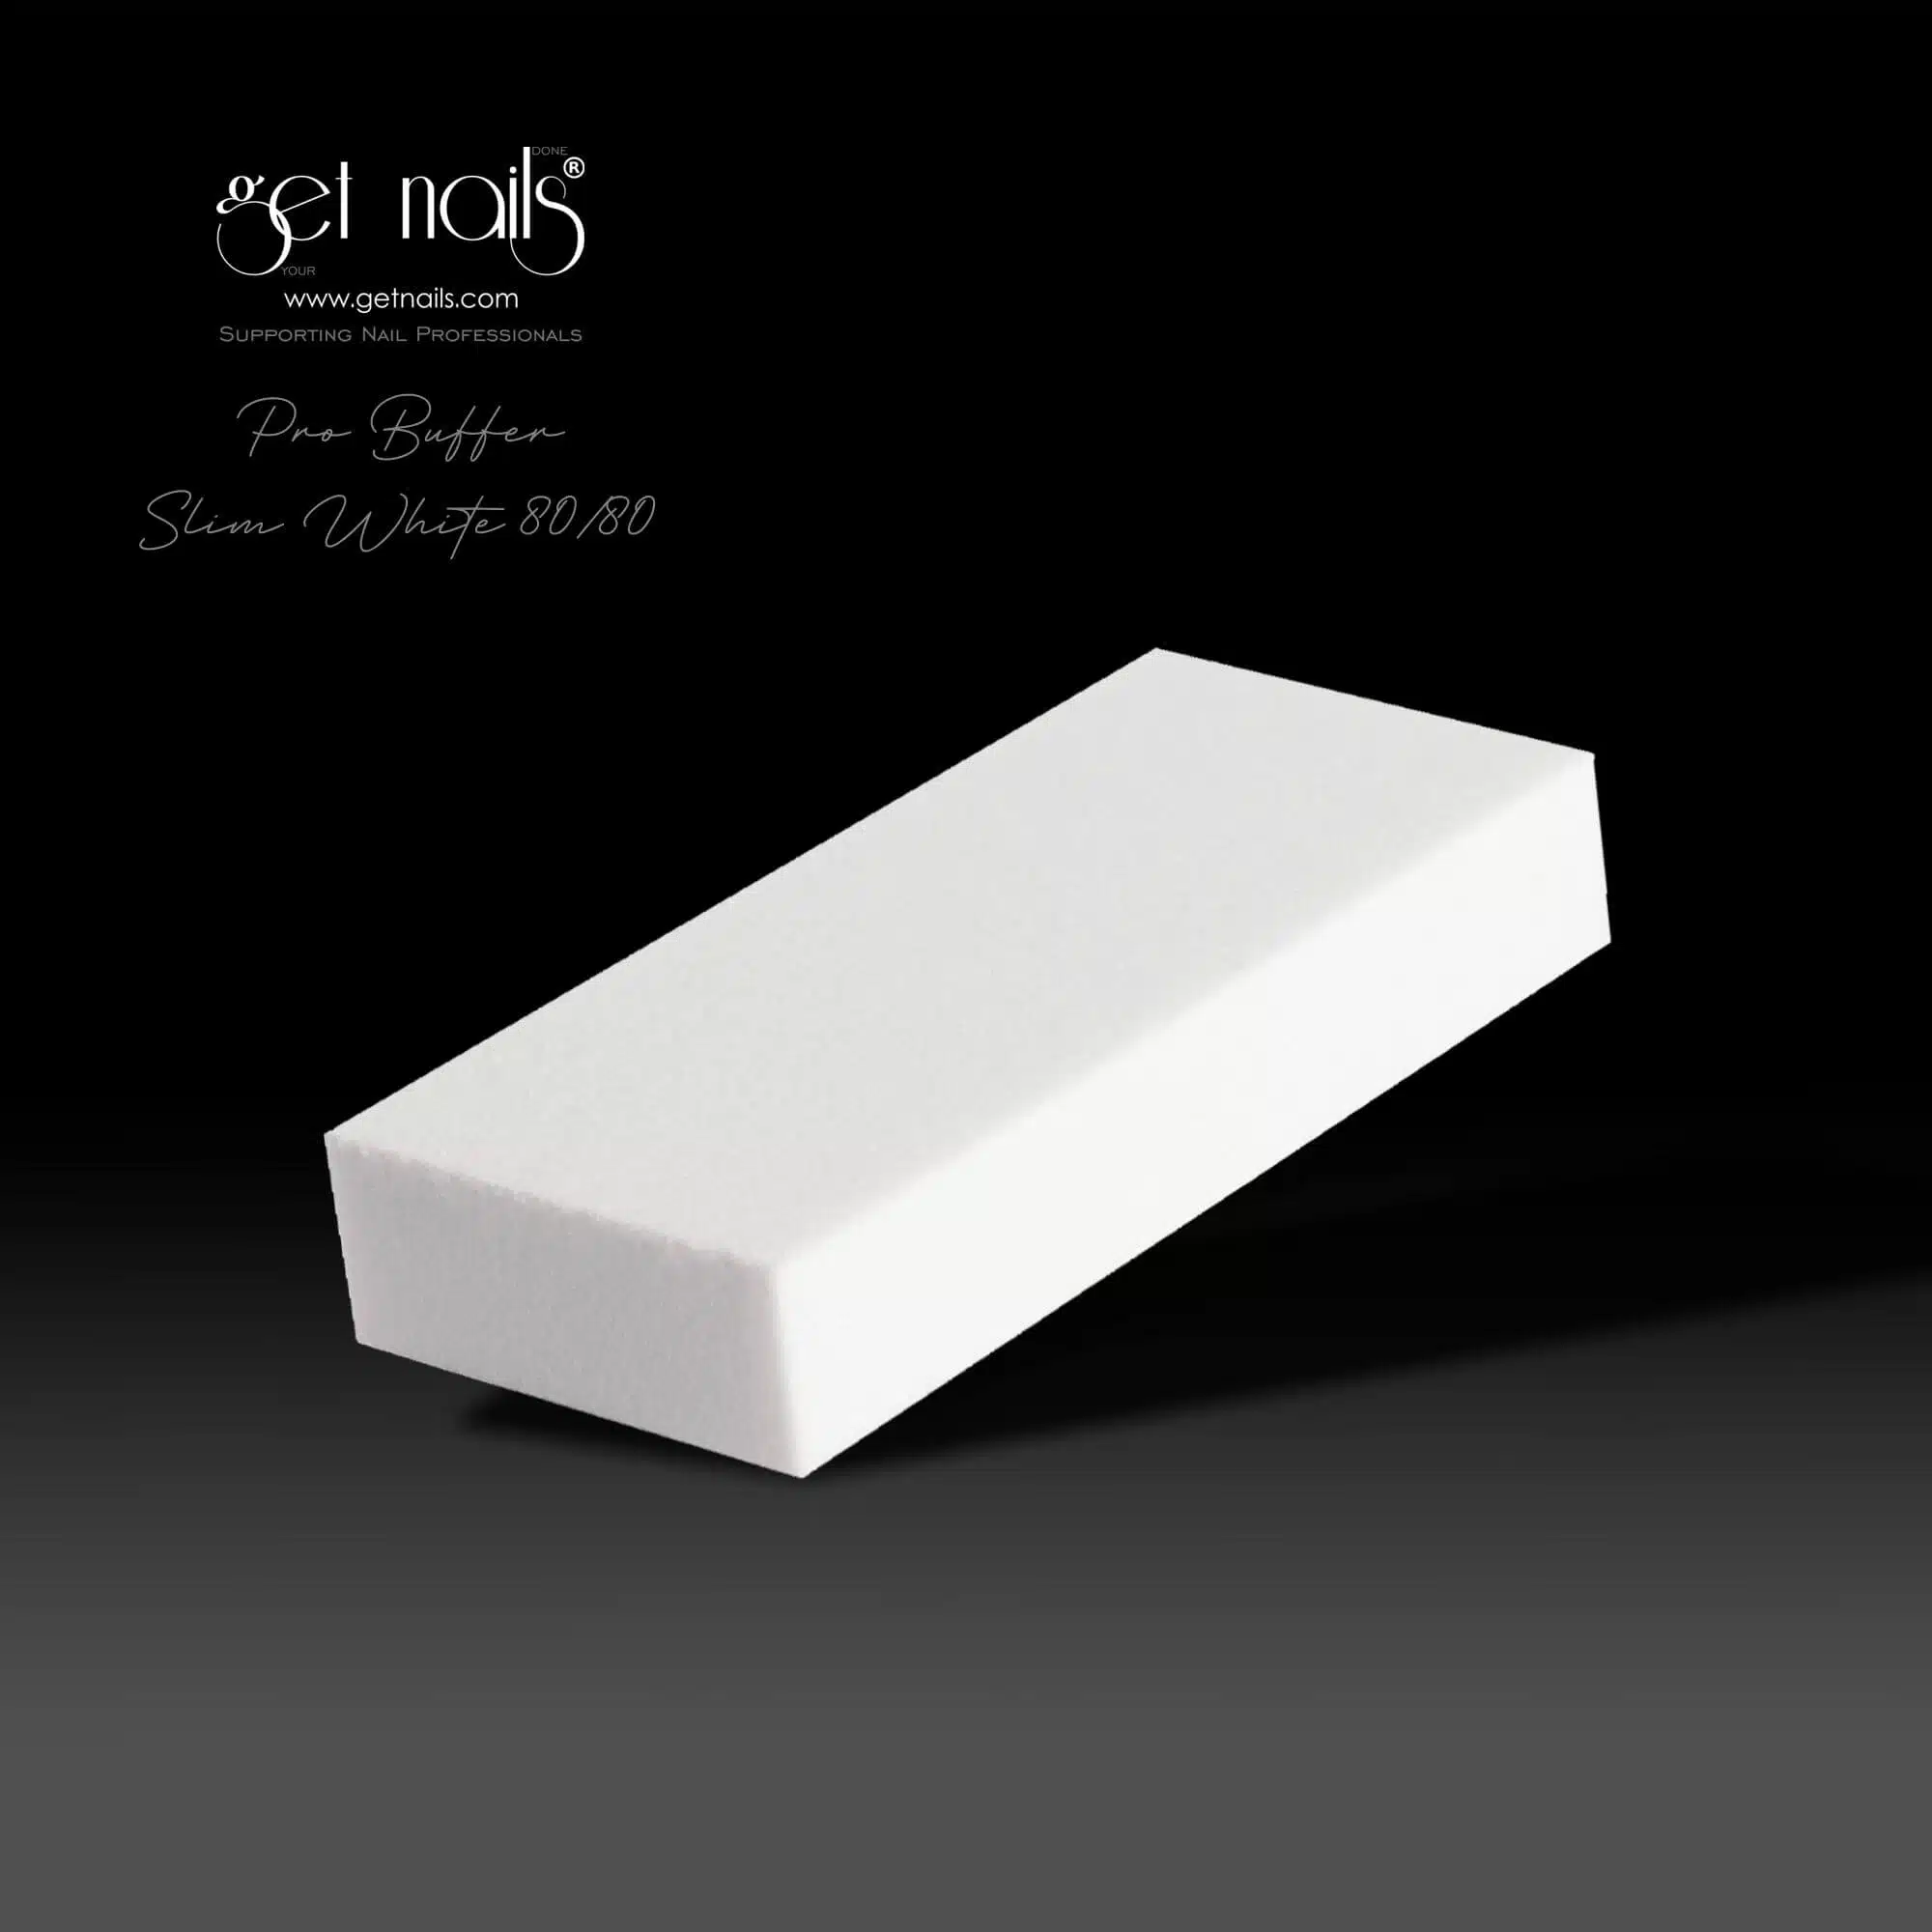 Get Nails Austria - Buffer Thin White 80/80